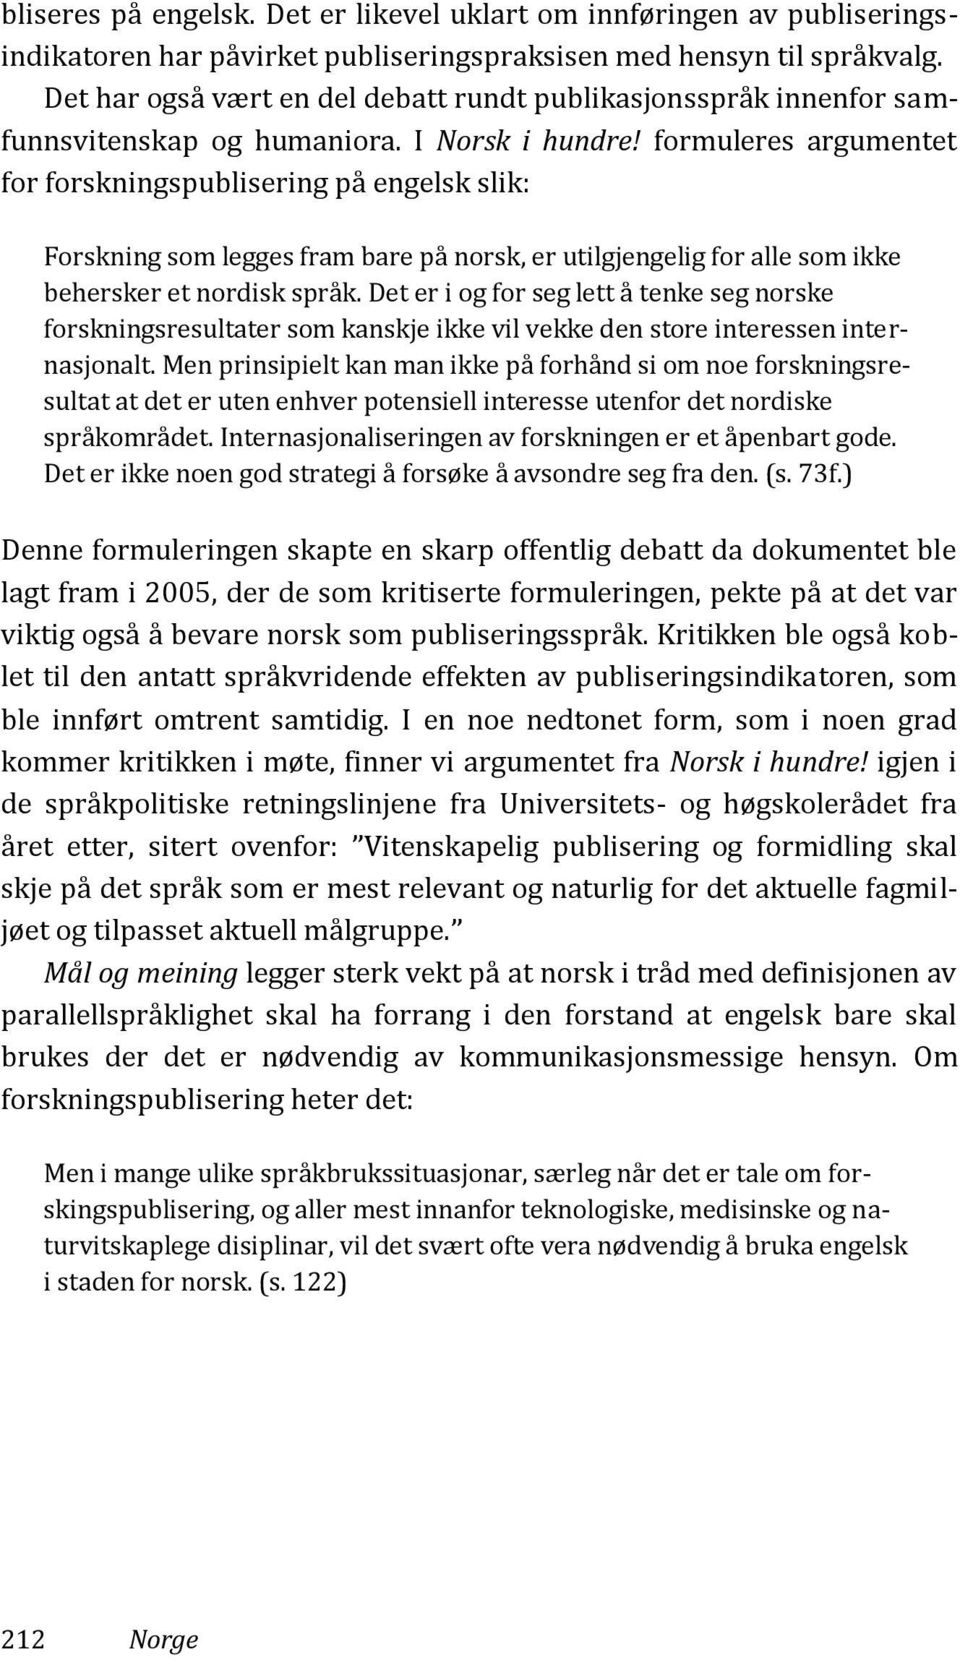 formuleres argumentet for forskningspublisering på engelsk slik: Forskning som legges fram bare på norsk, er utilgjengelig for alle som ikke behersker et nordisk språk.